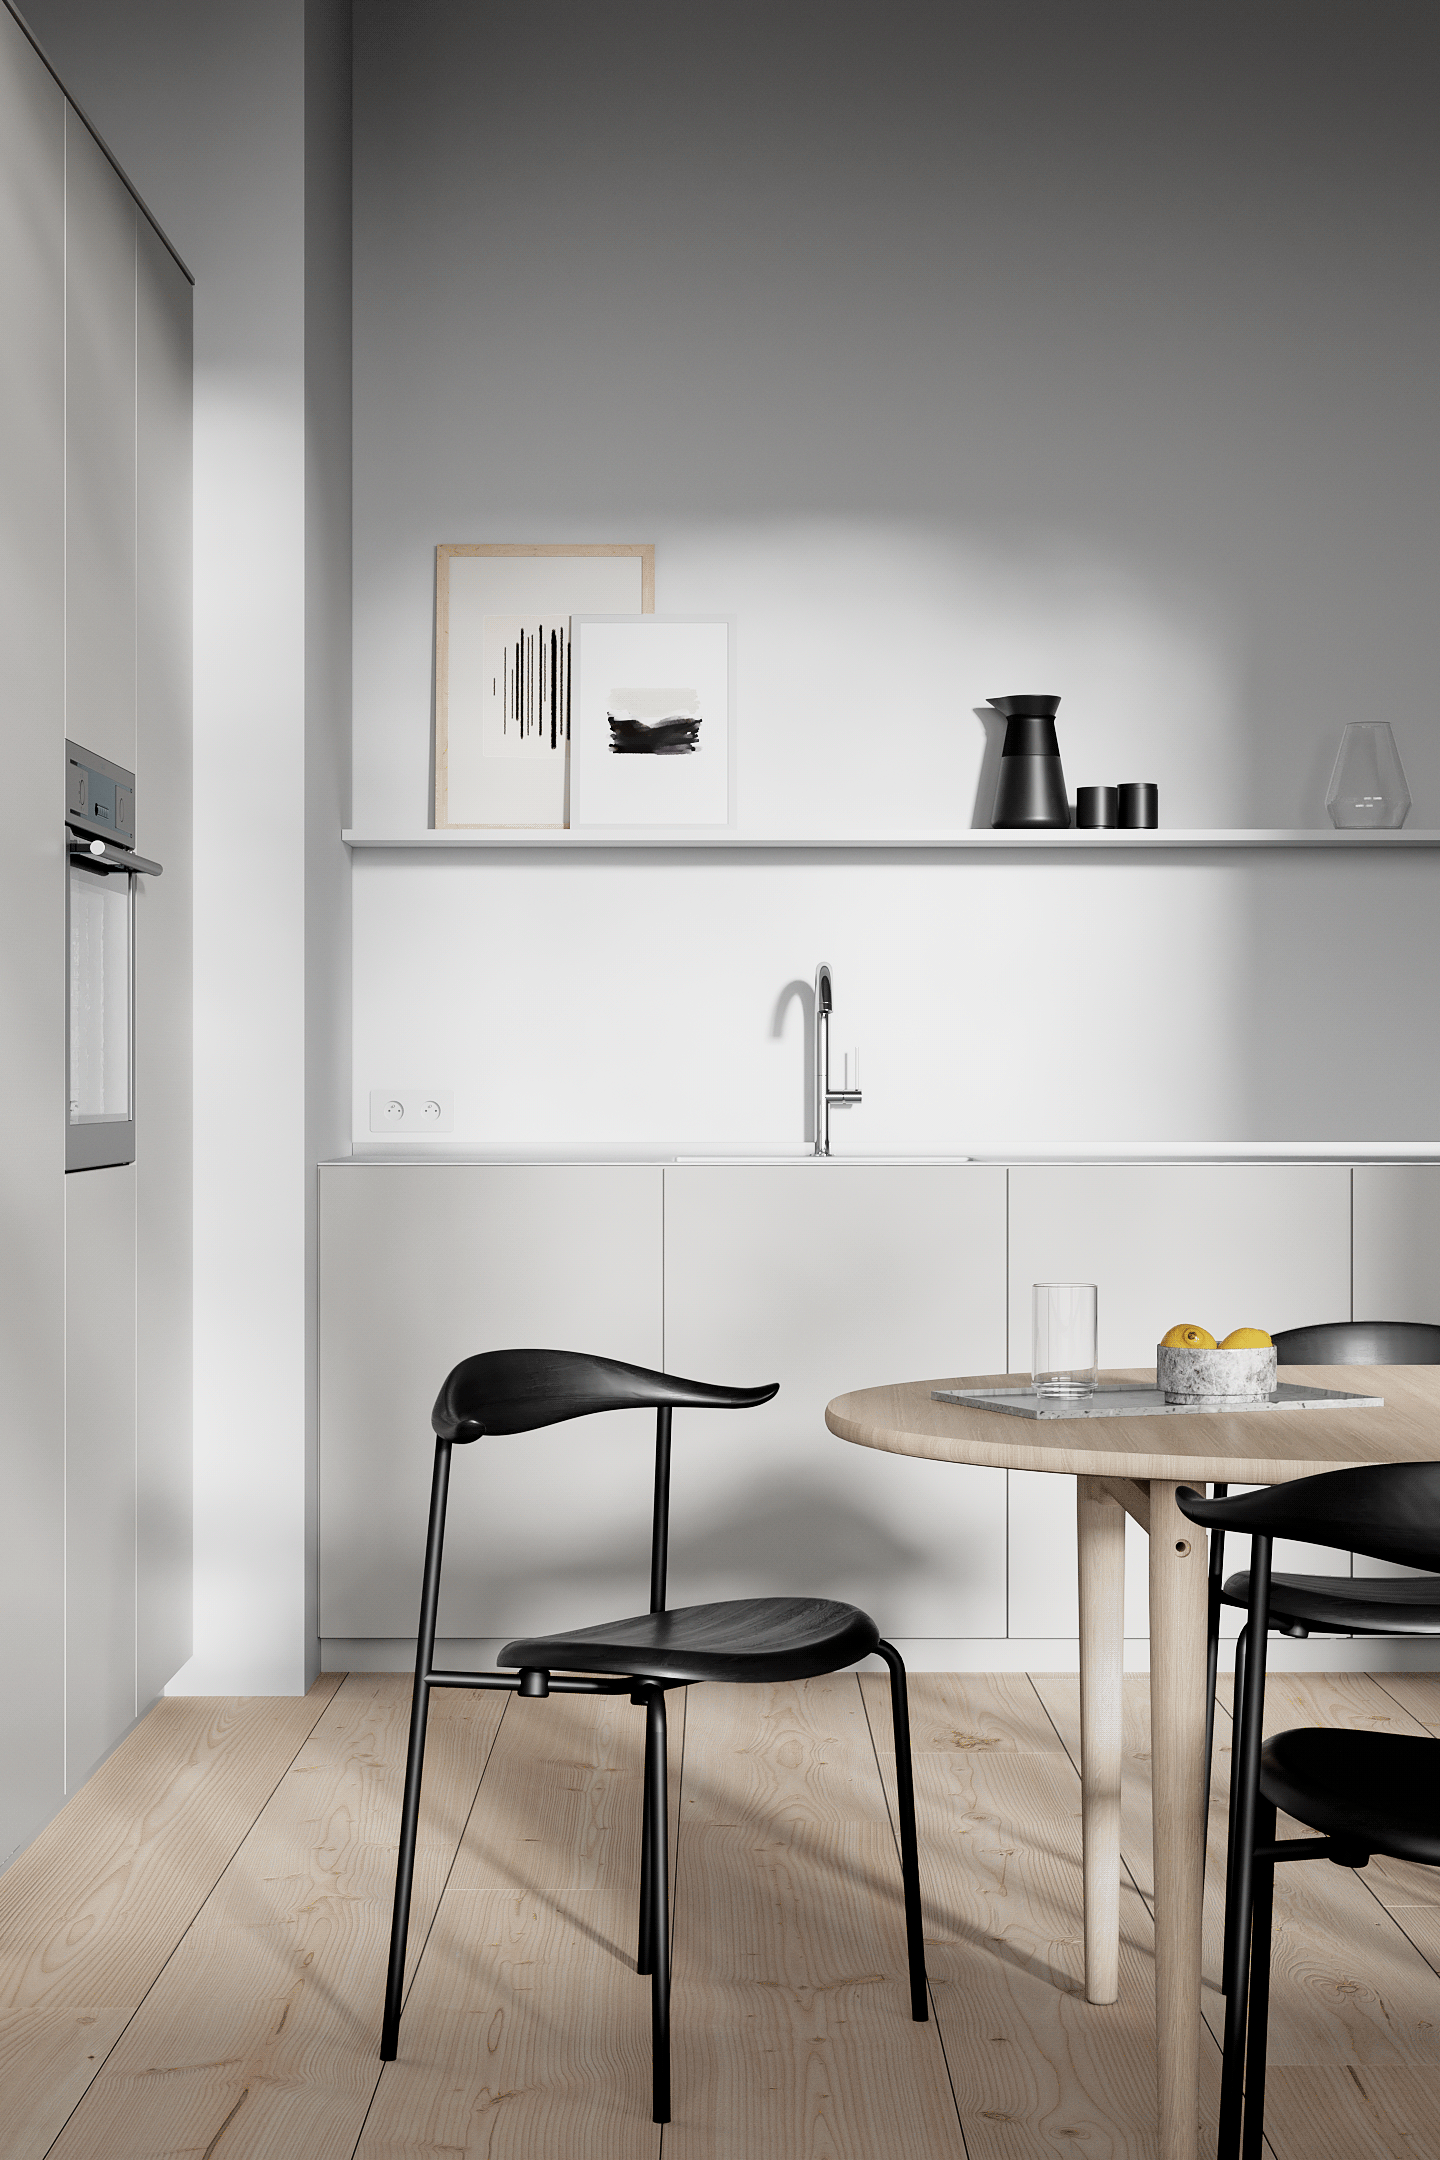 Minimal contemporary kitchen design.